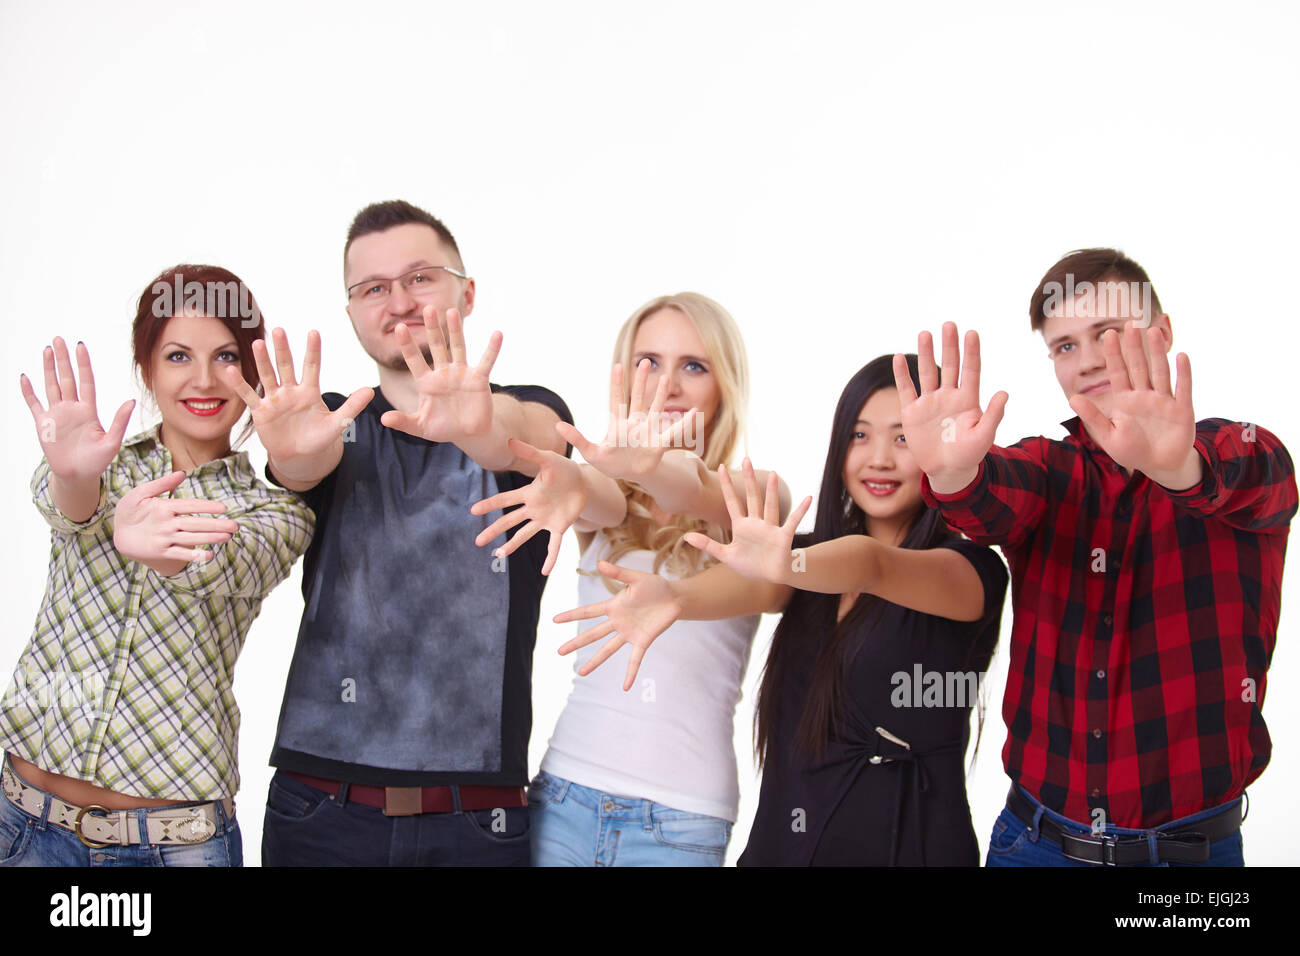 Un groupe de jeunes gens, les étudiants se tenir ensemble, montrent le palm Banque D'Images